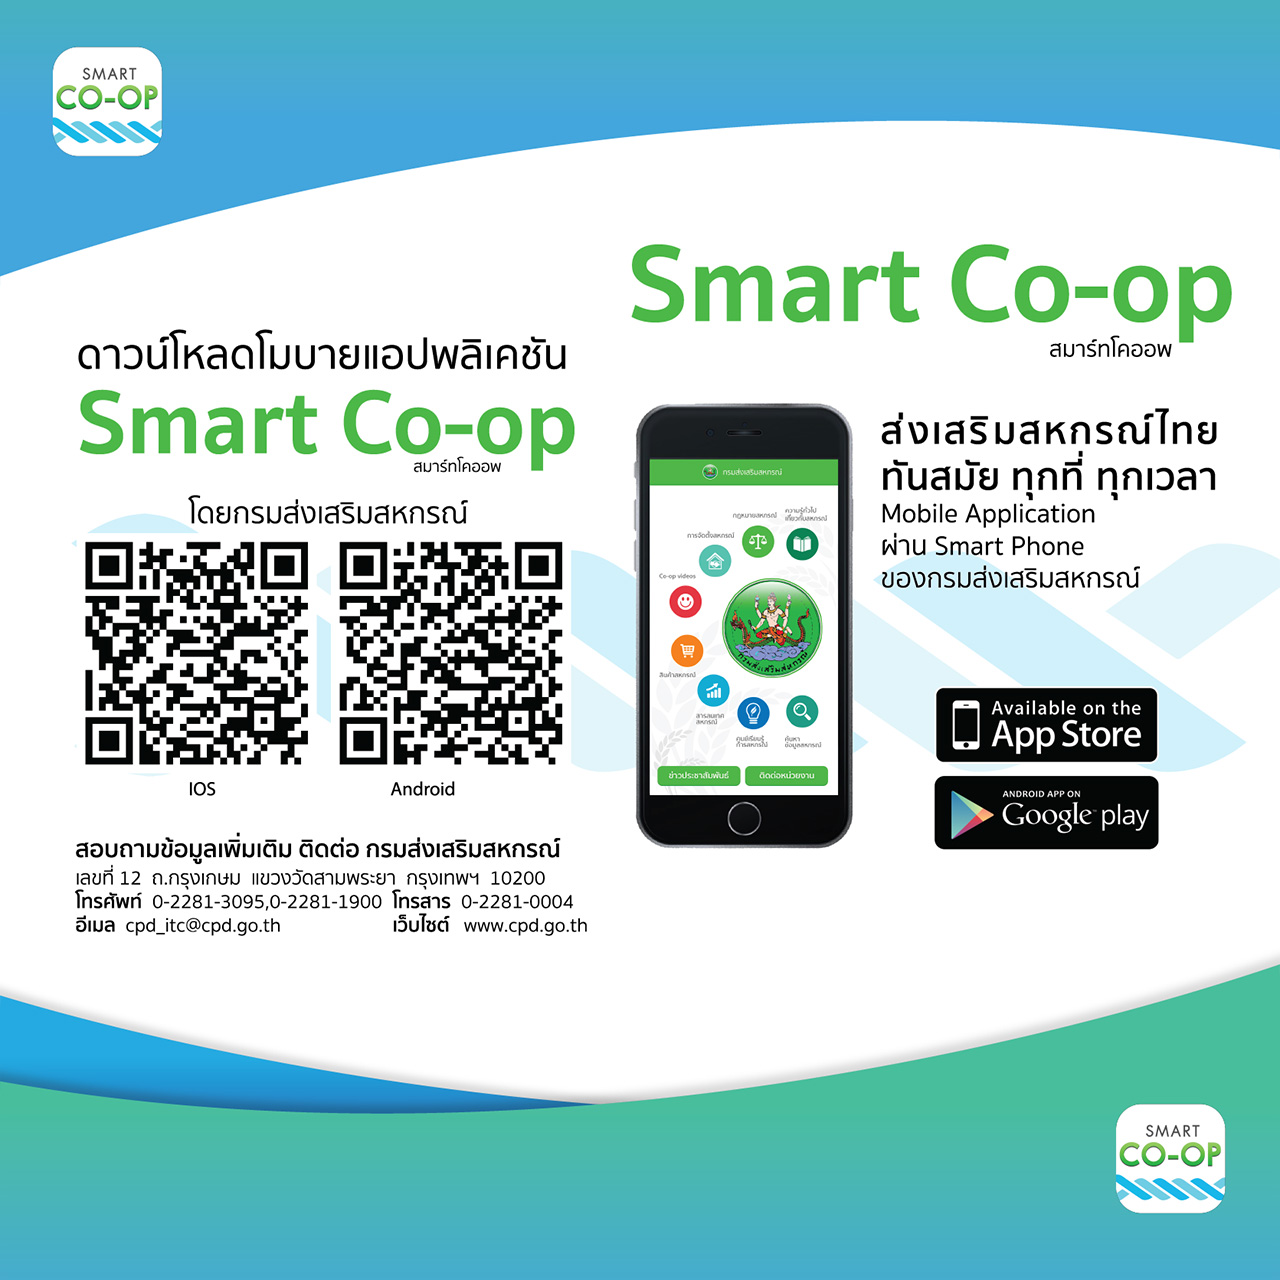 smart coop -01